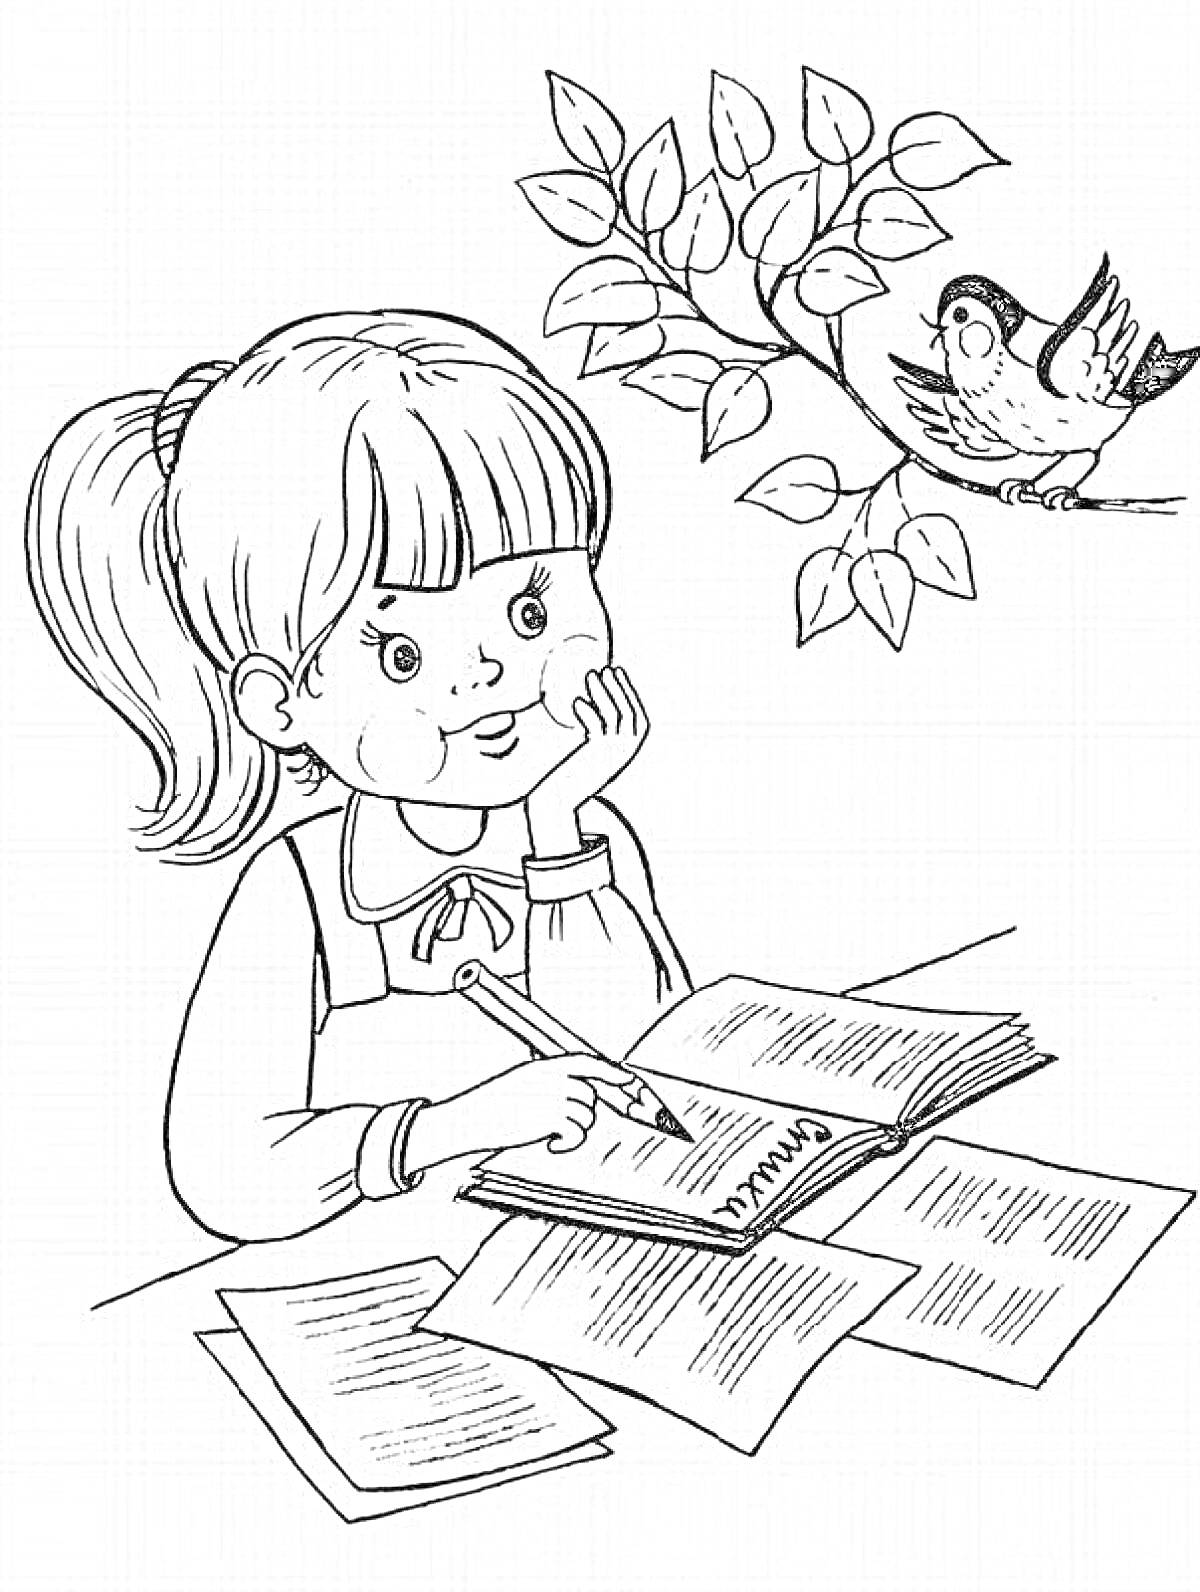 Раскраска Девочка, пишущая в тетради, рядом с книгой и веткой с птицей